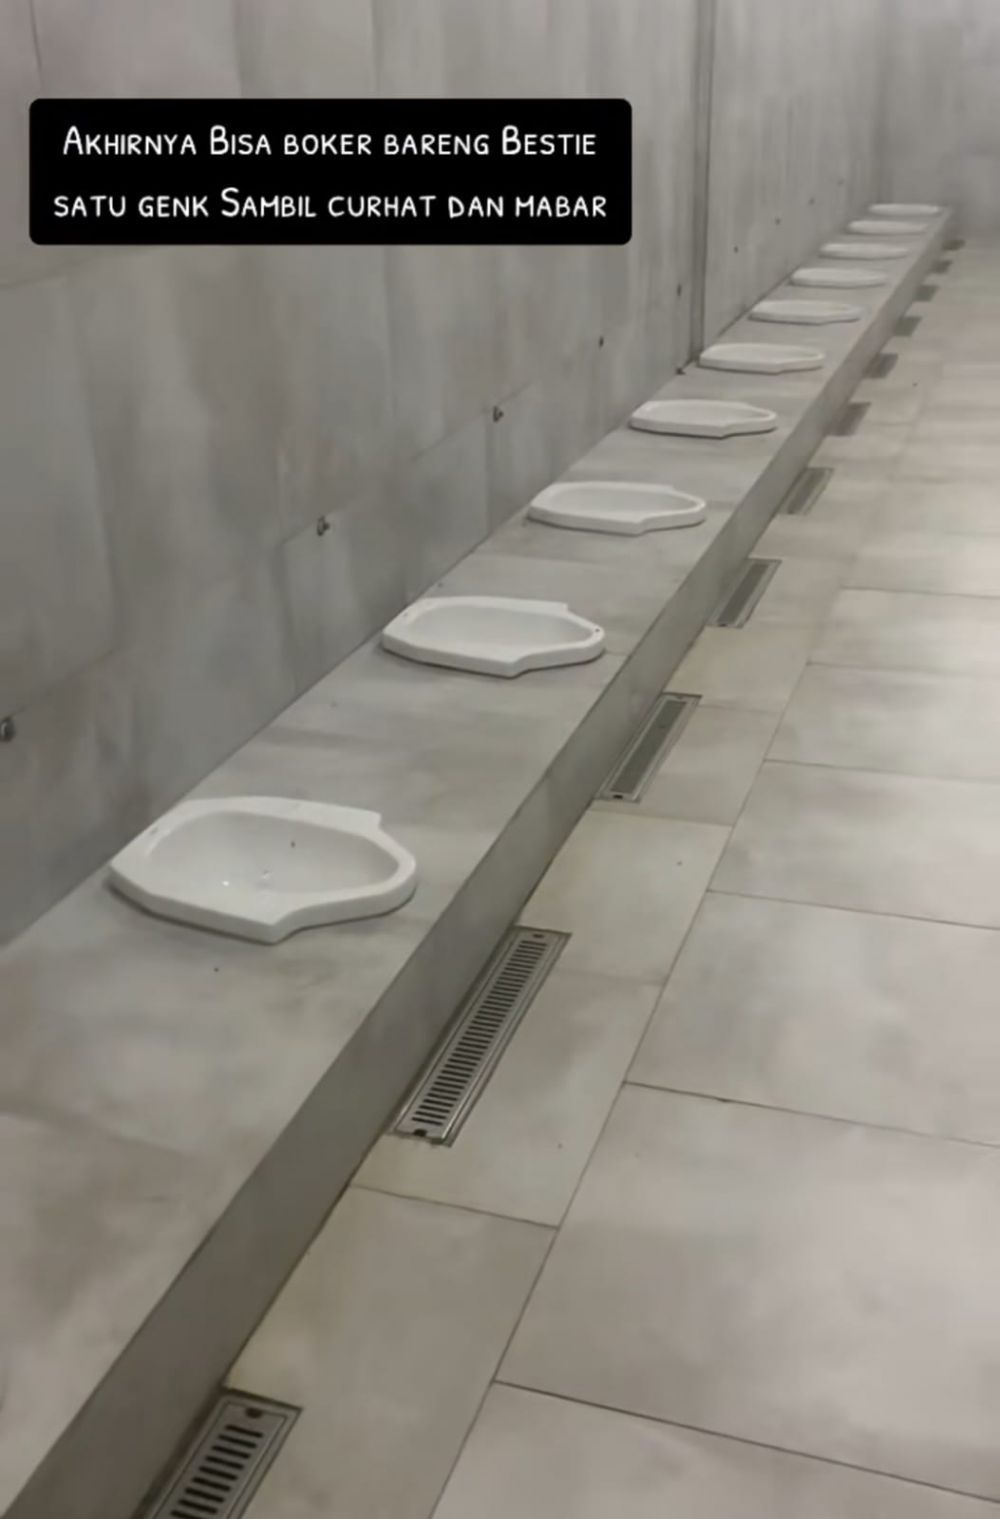 Buang hajat bisa sambil ngobrol, desain toilet kelewat nyeleneh ini nggak cocok bagi introvert